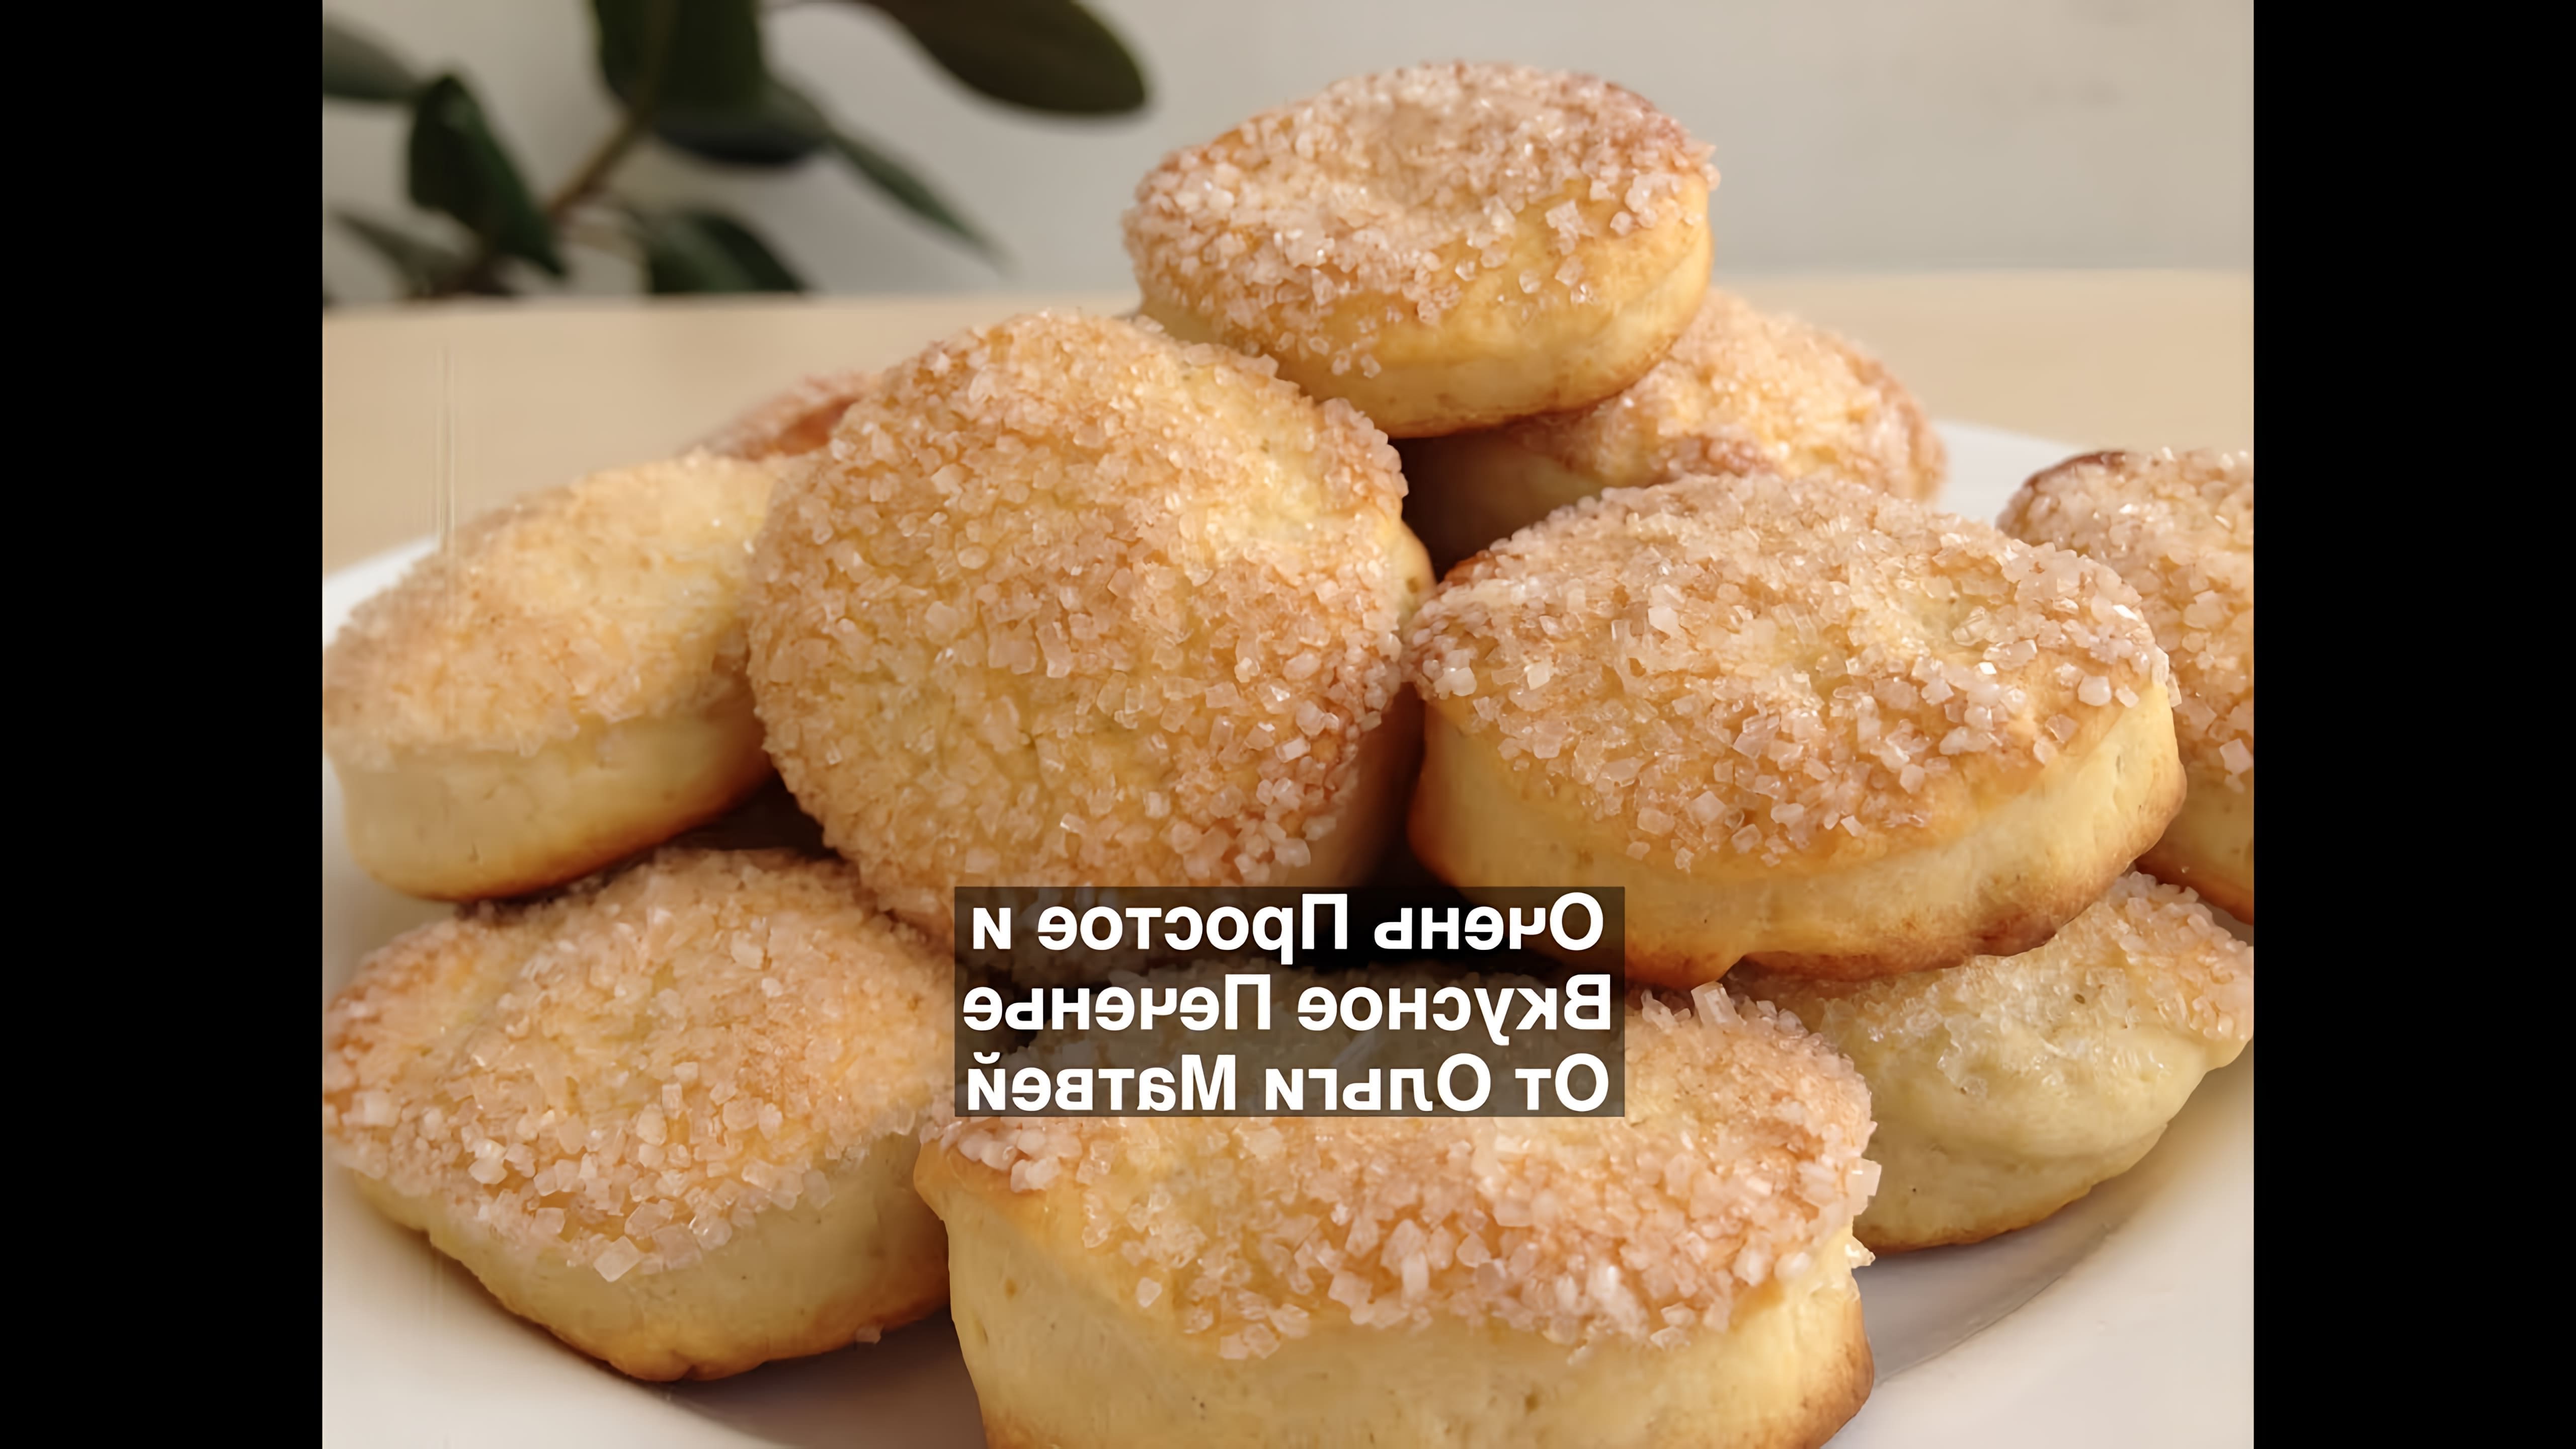 Видео рецепт простых домашних печенья, которые описываются как очень вкусные и легкие в приготовлении